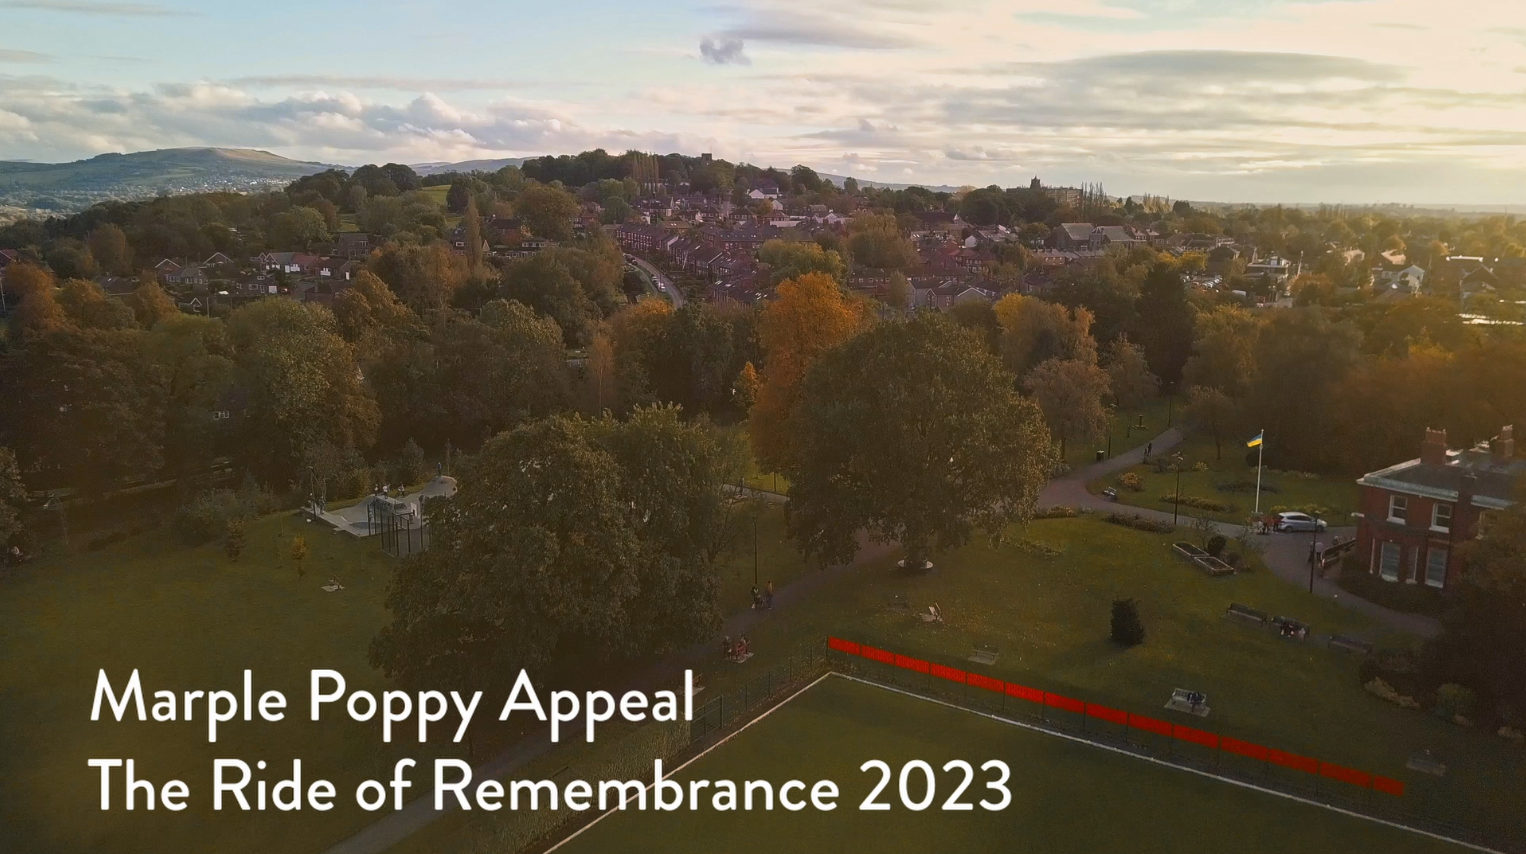 Marple Poppy Appeal 2023